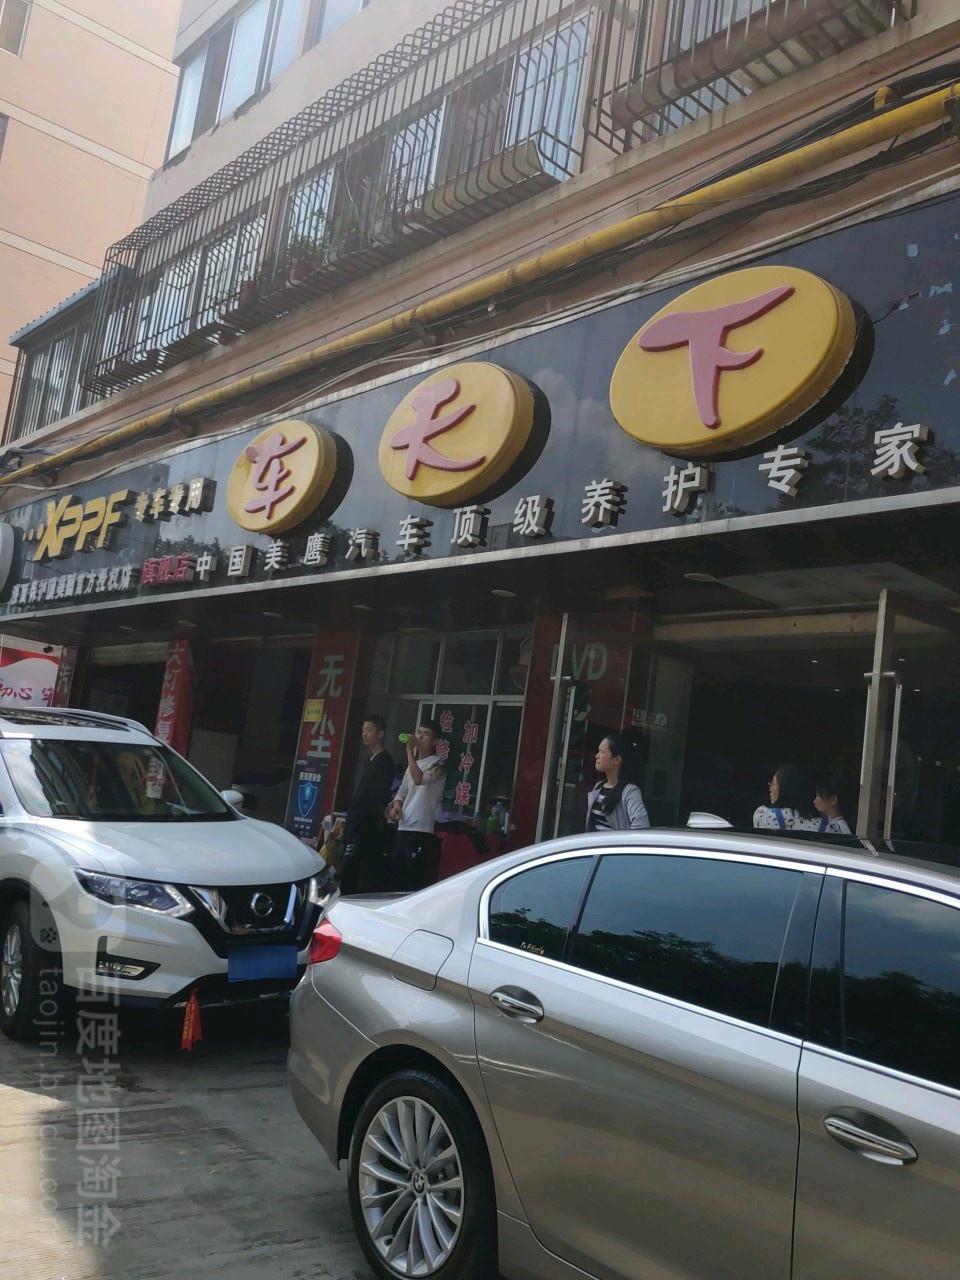 甘肃省兰州市城关区雁滩路蔚然锦和连锁超市隔壁